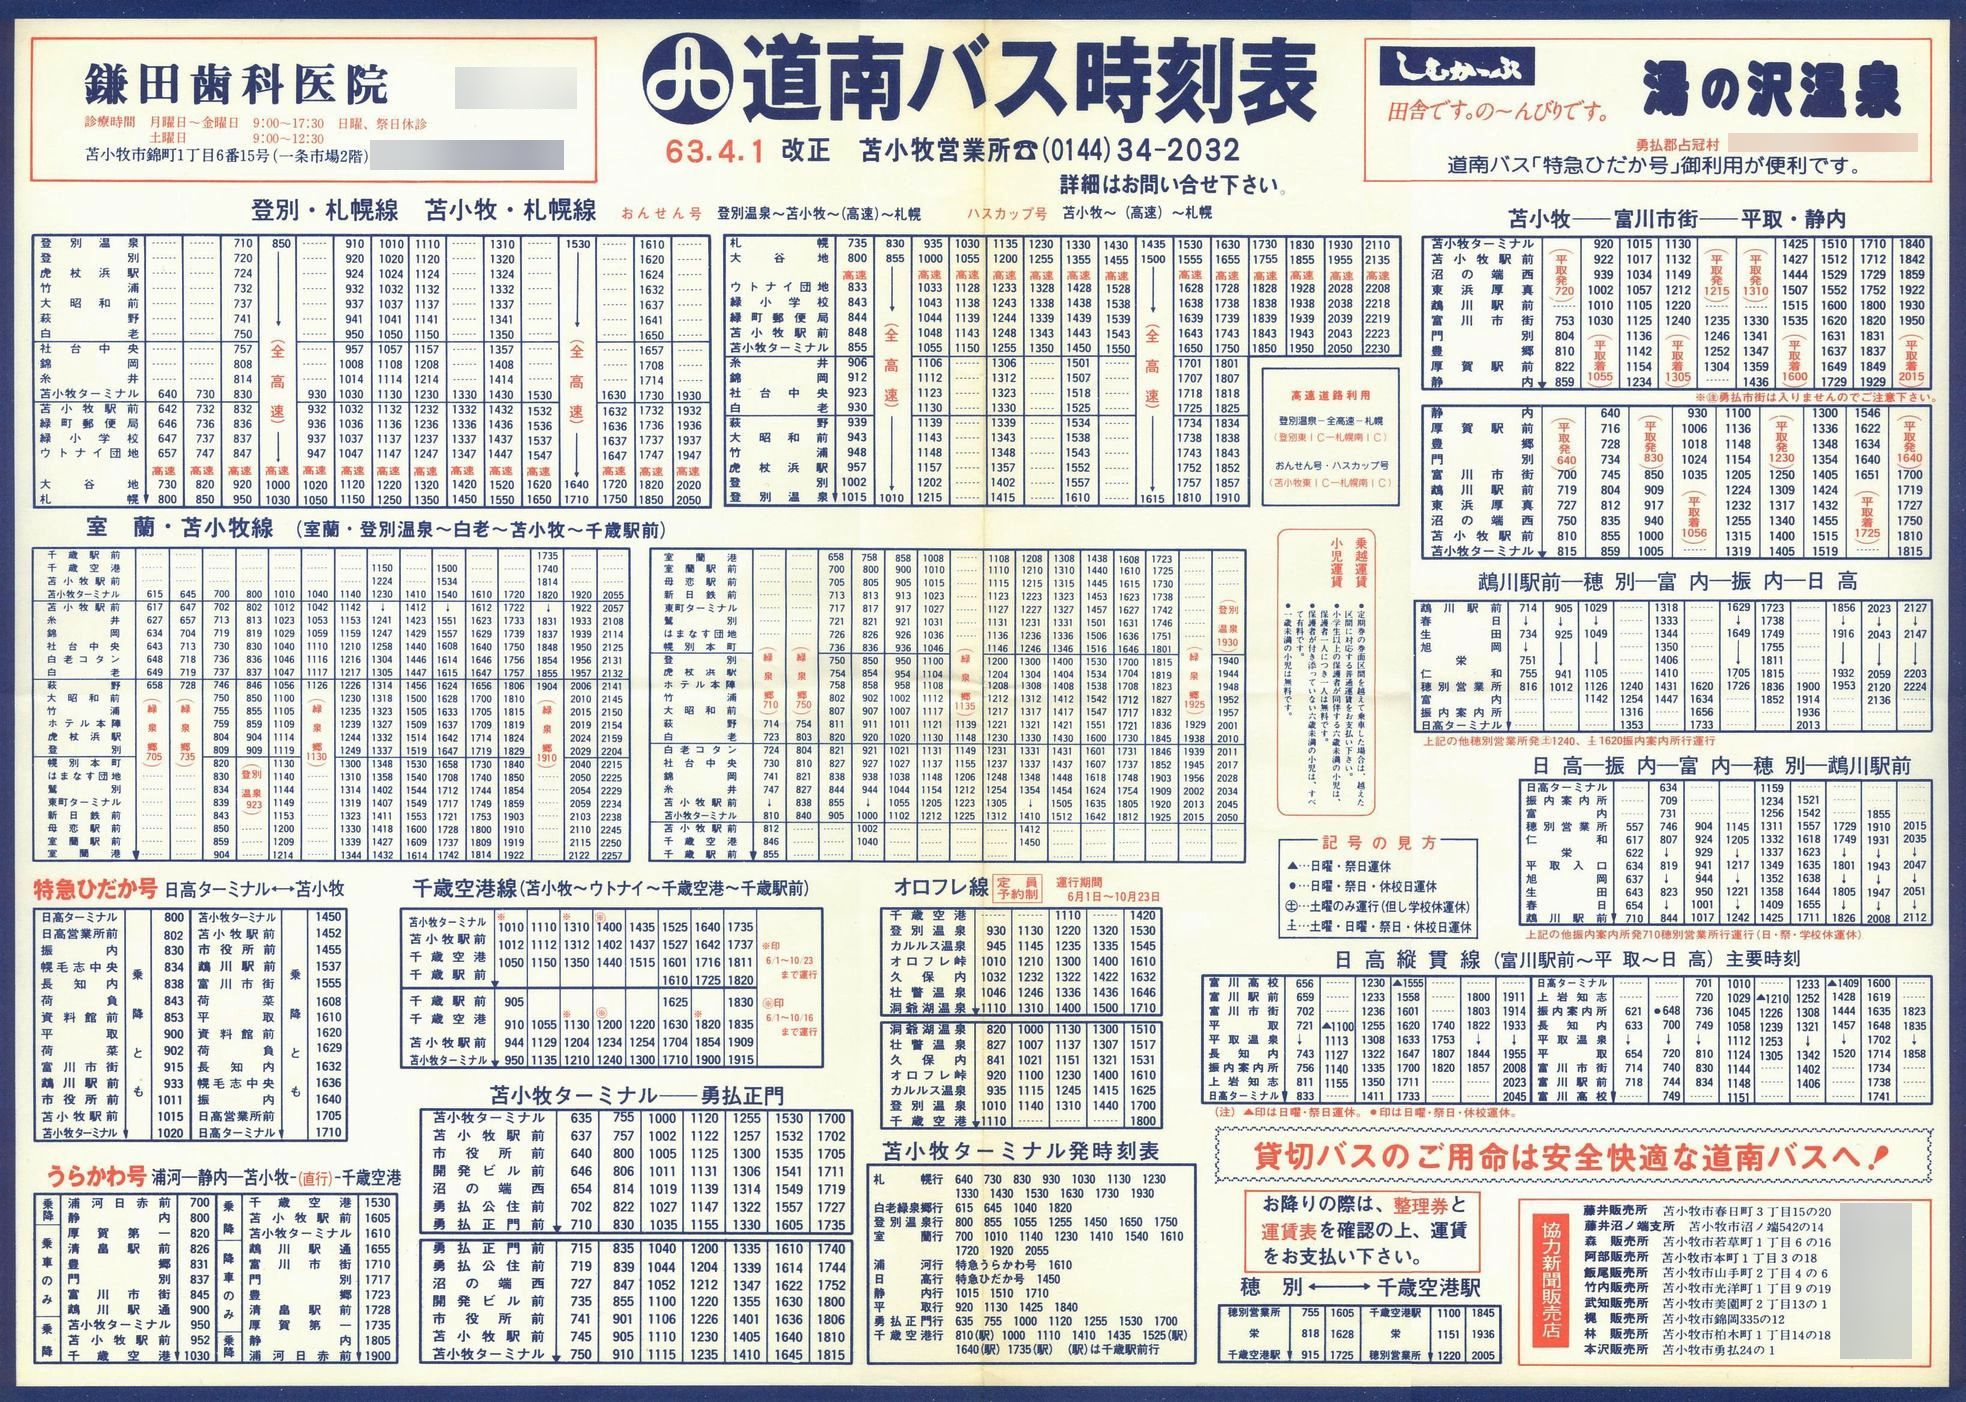 1988-04-01改正_道南バス_苫小牧管内大判時刻表